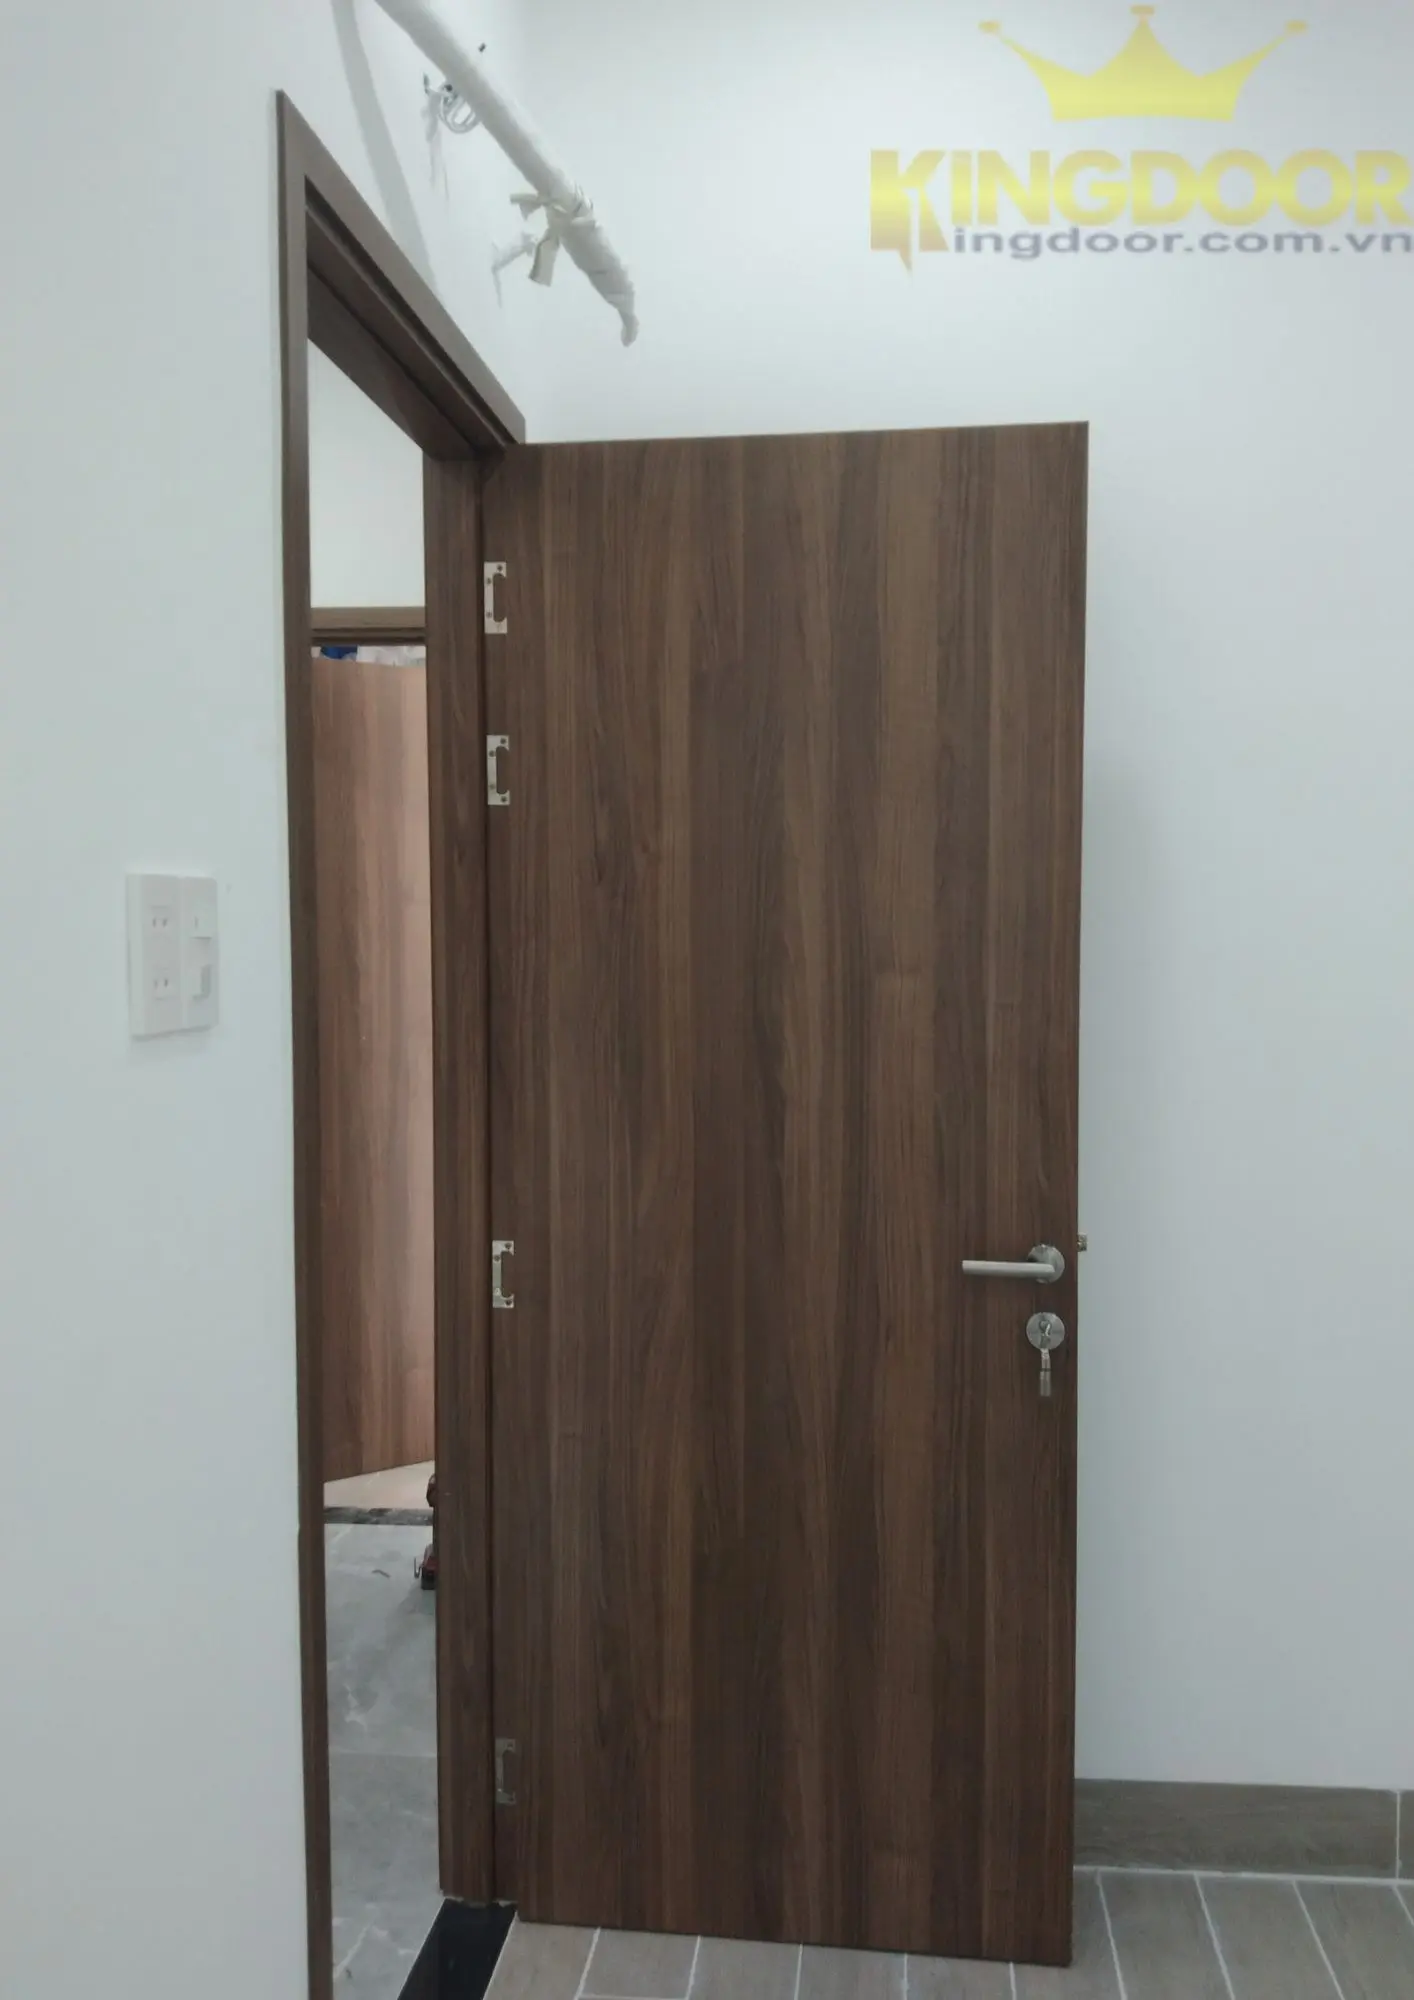 Nội, ngoại thất: Cửa gỗ MDF An Cường dành cho phòng ngủ Thiet-ke-chua-co-ten-30ioJVa